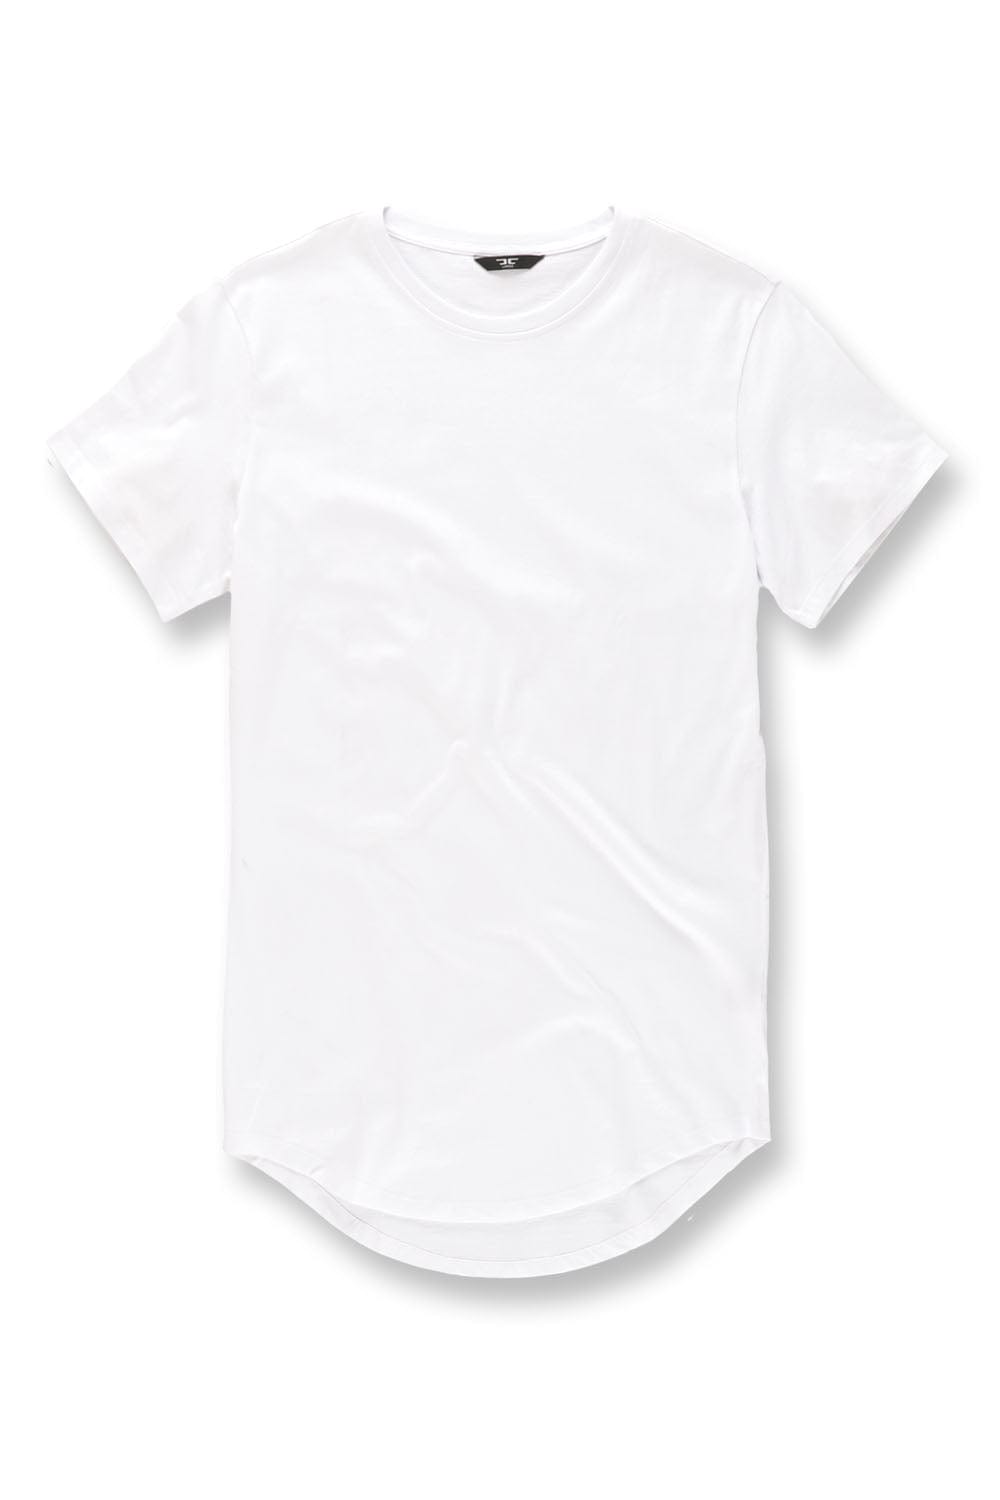 JC Big Men Big Men's Scallop T-Shirt White / 4XL